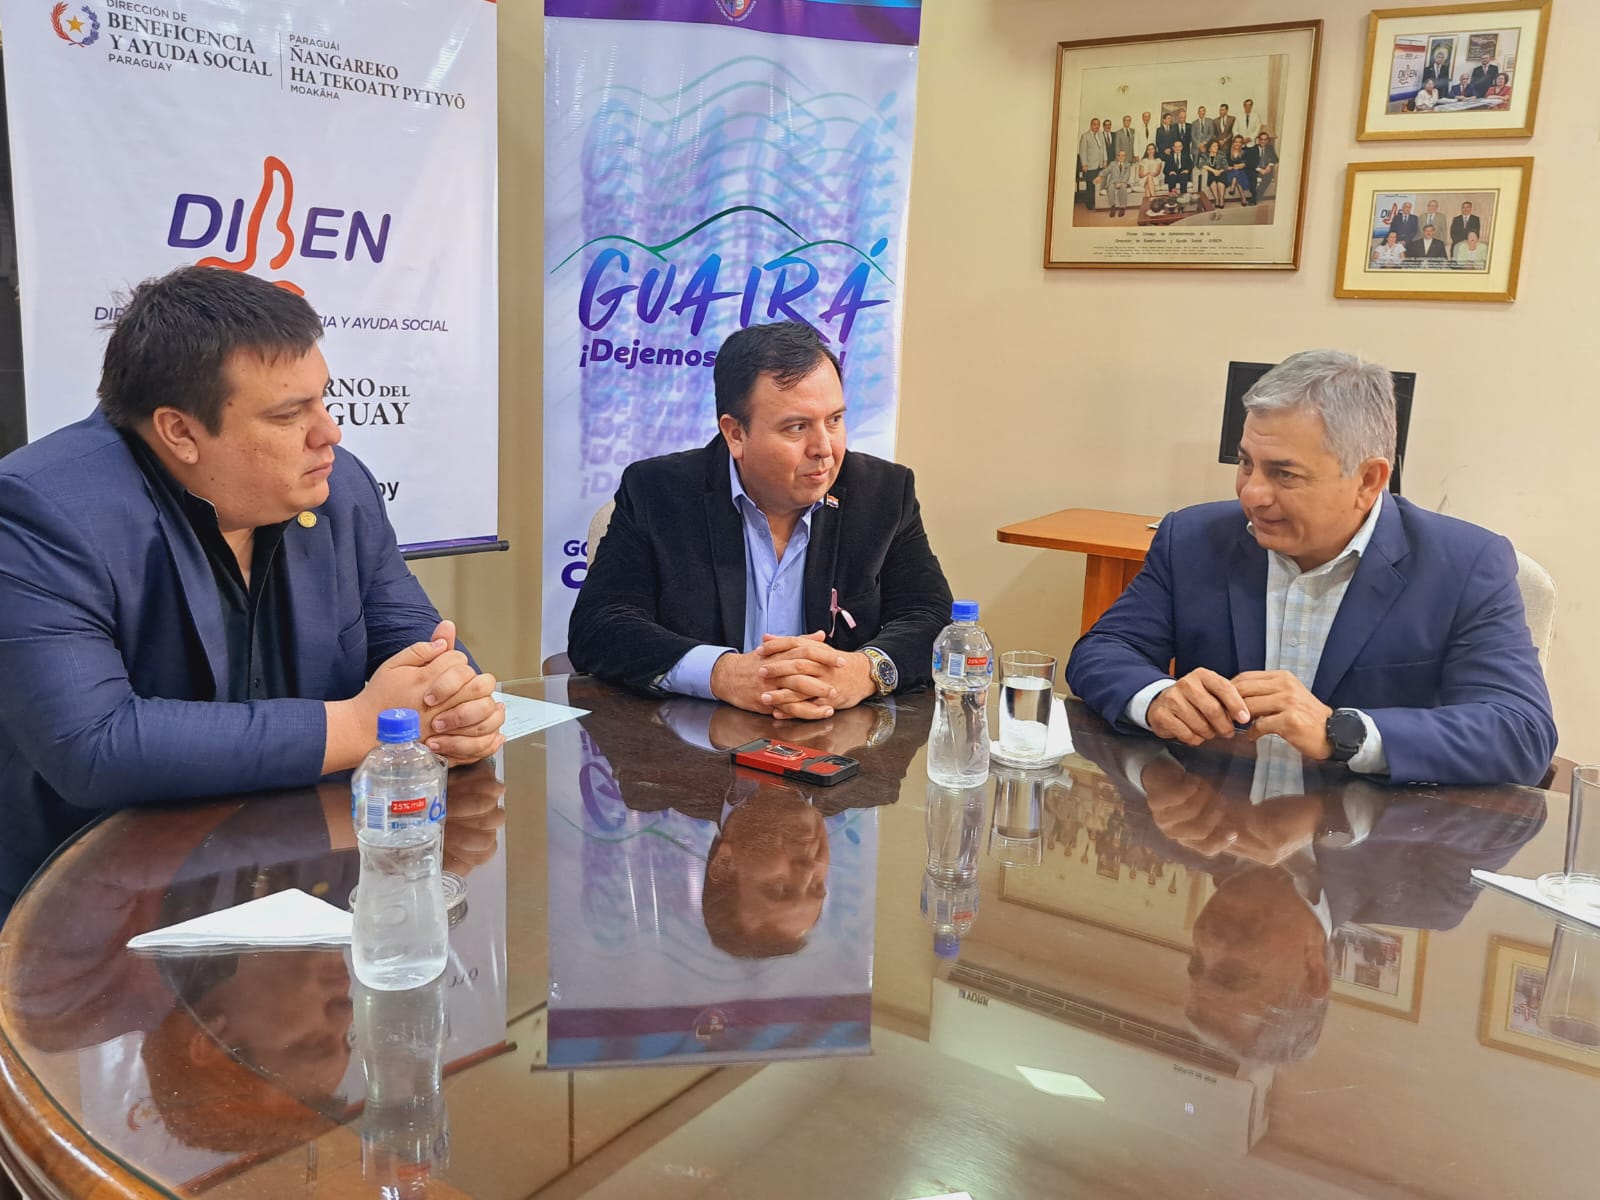 Filial de la DIBEN en Guairá contará con nueva sede